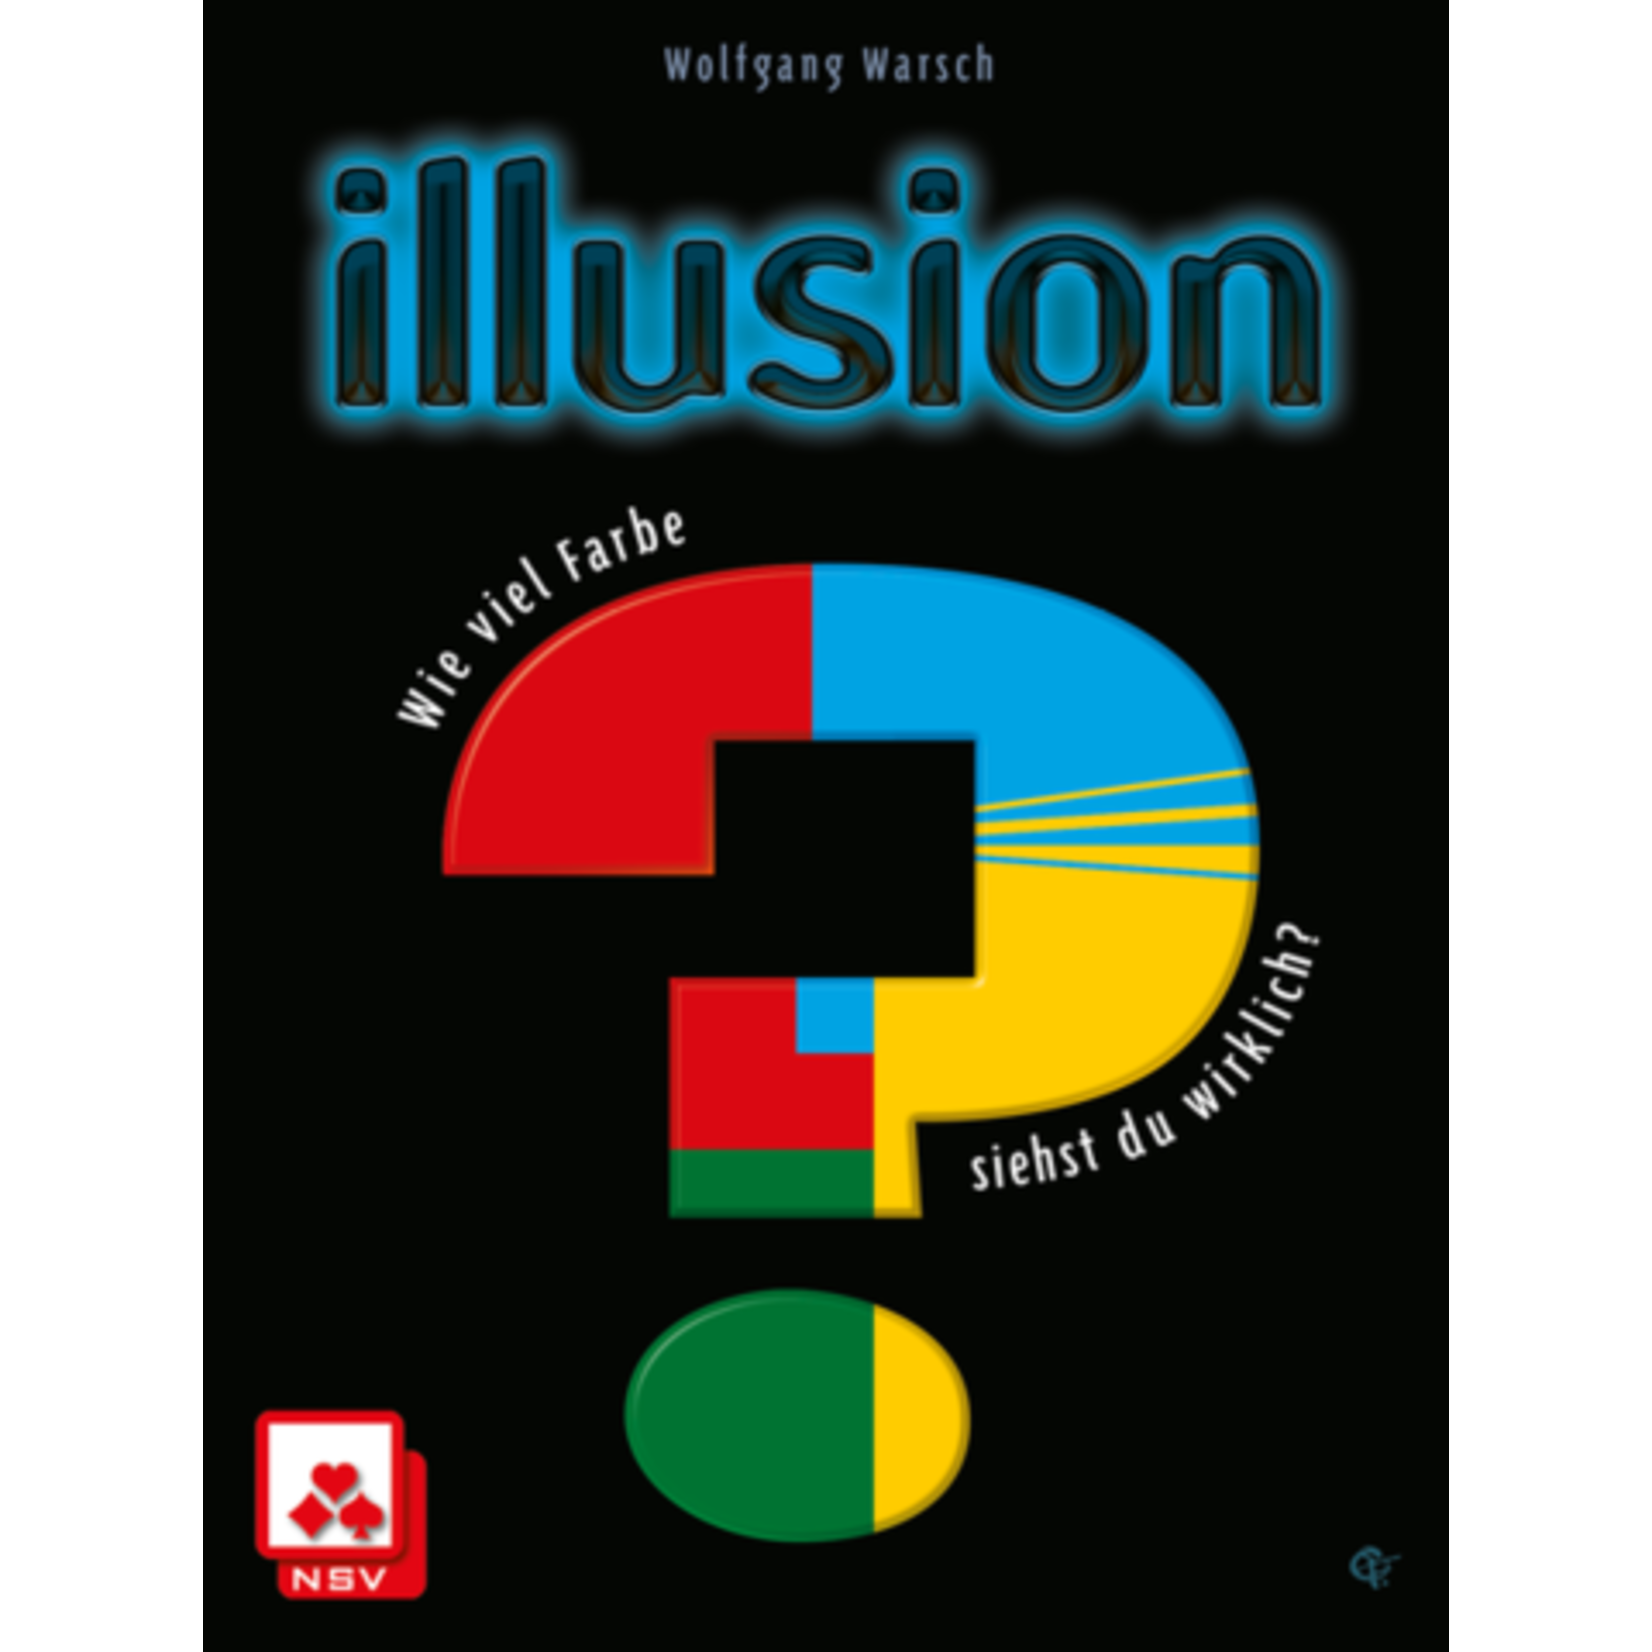 Pandasaurus Games Illusion